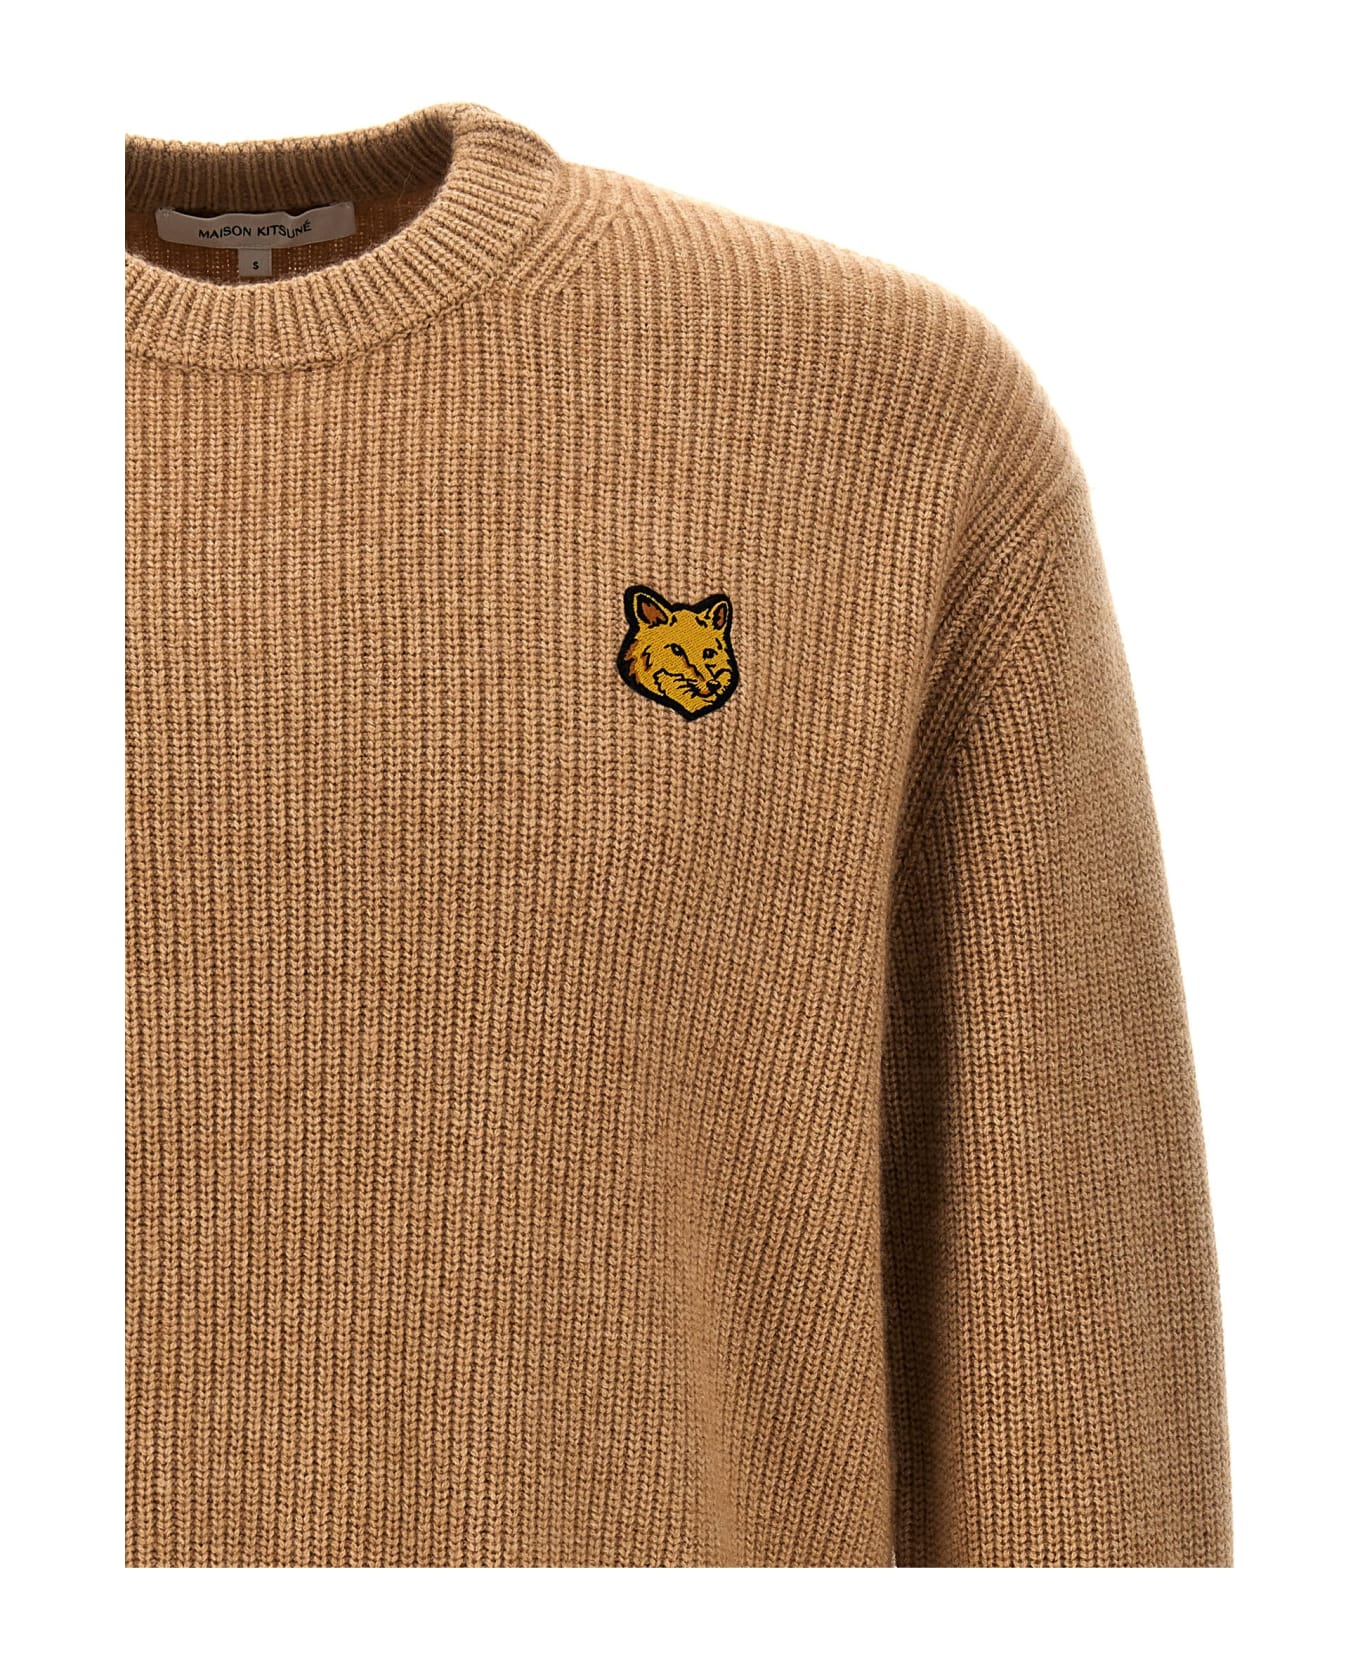 Maison Kitsuné 'tonal Fox' Sweater - Beige ニットウェア